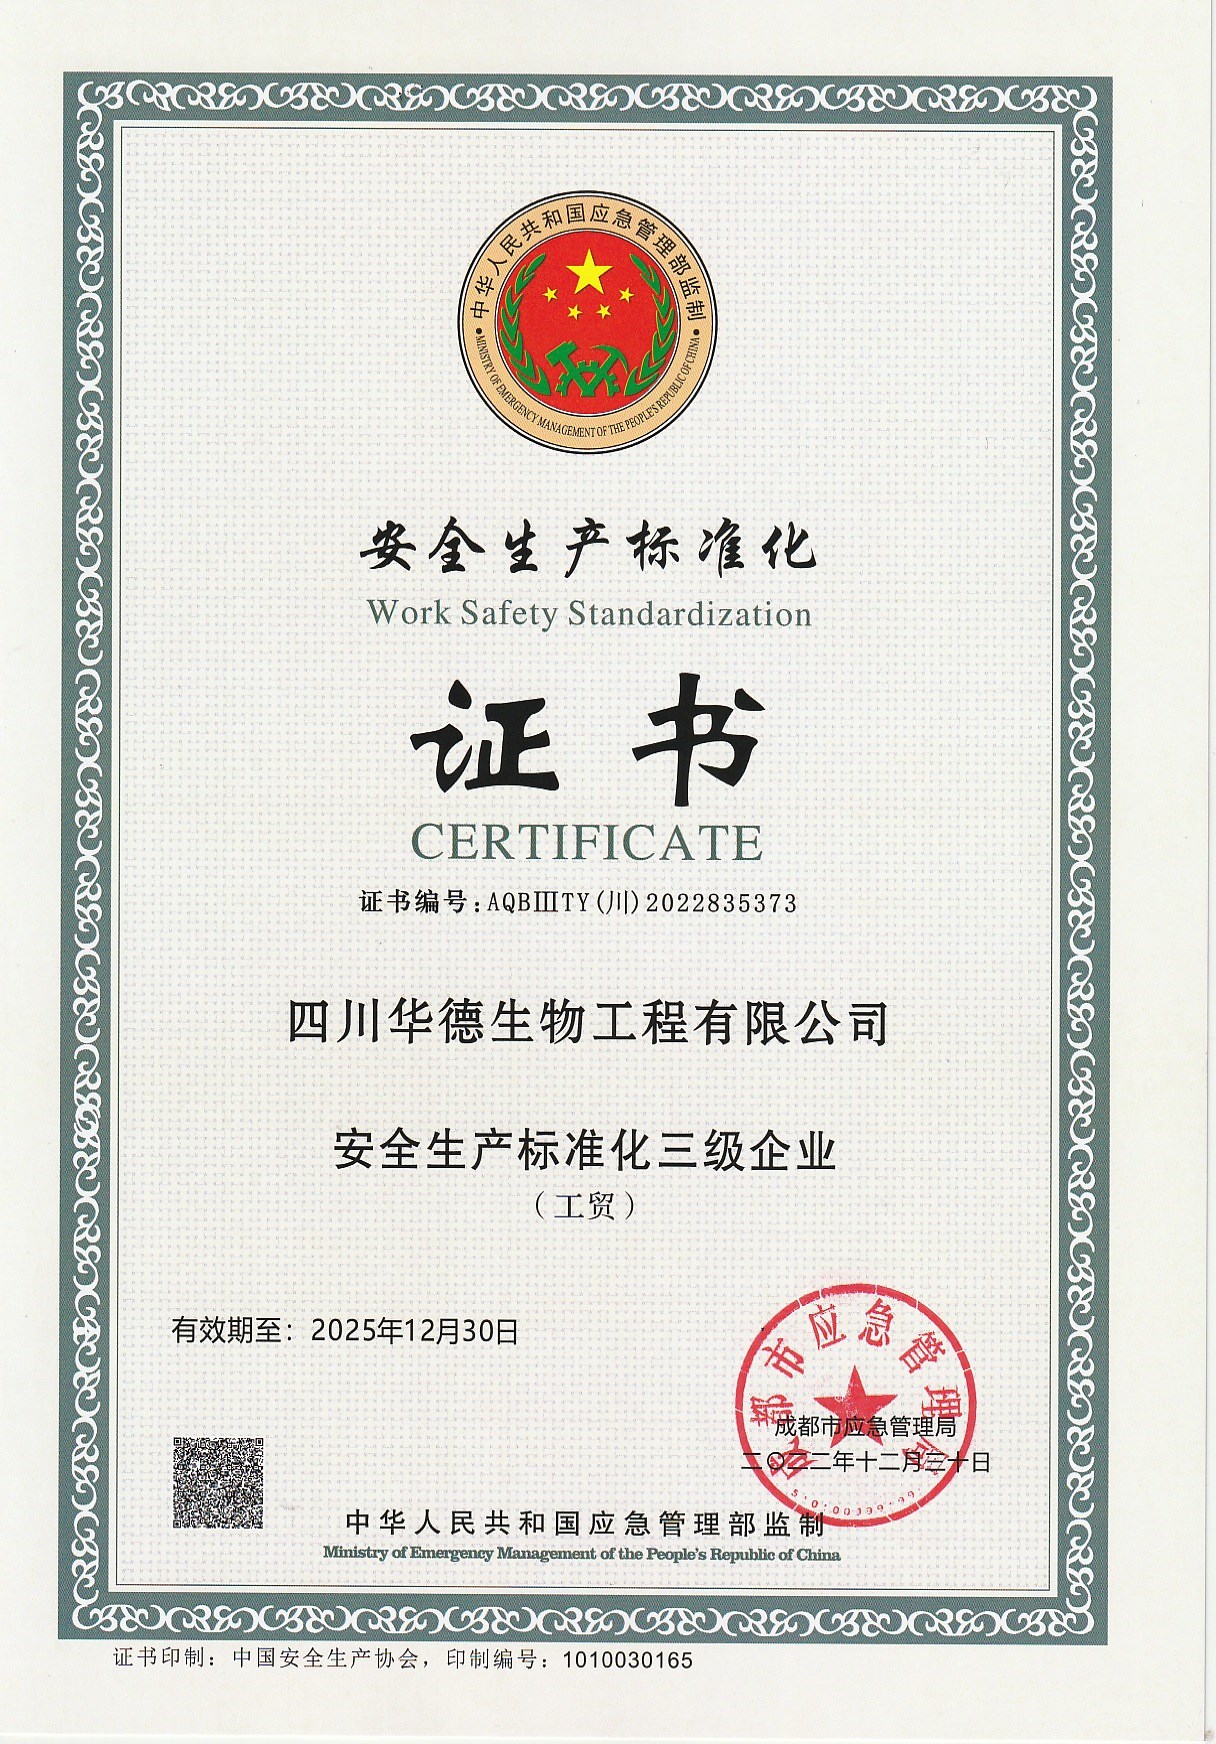 热烈祝贺我公司取得安全生产标准化三级证书